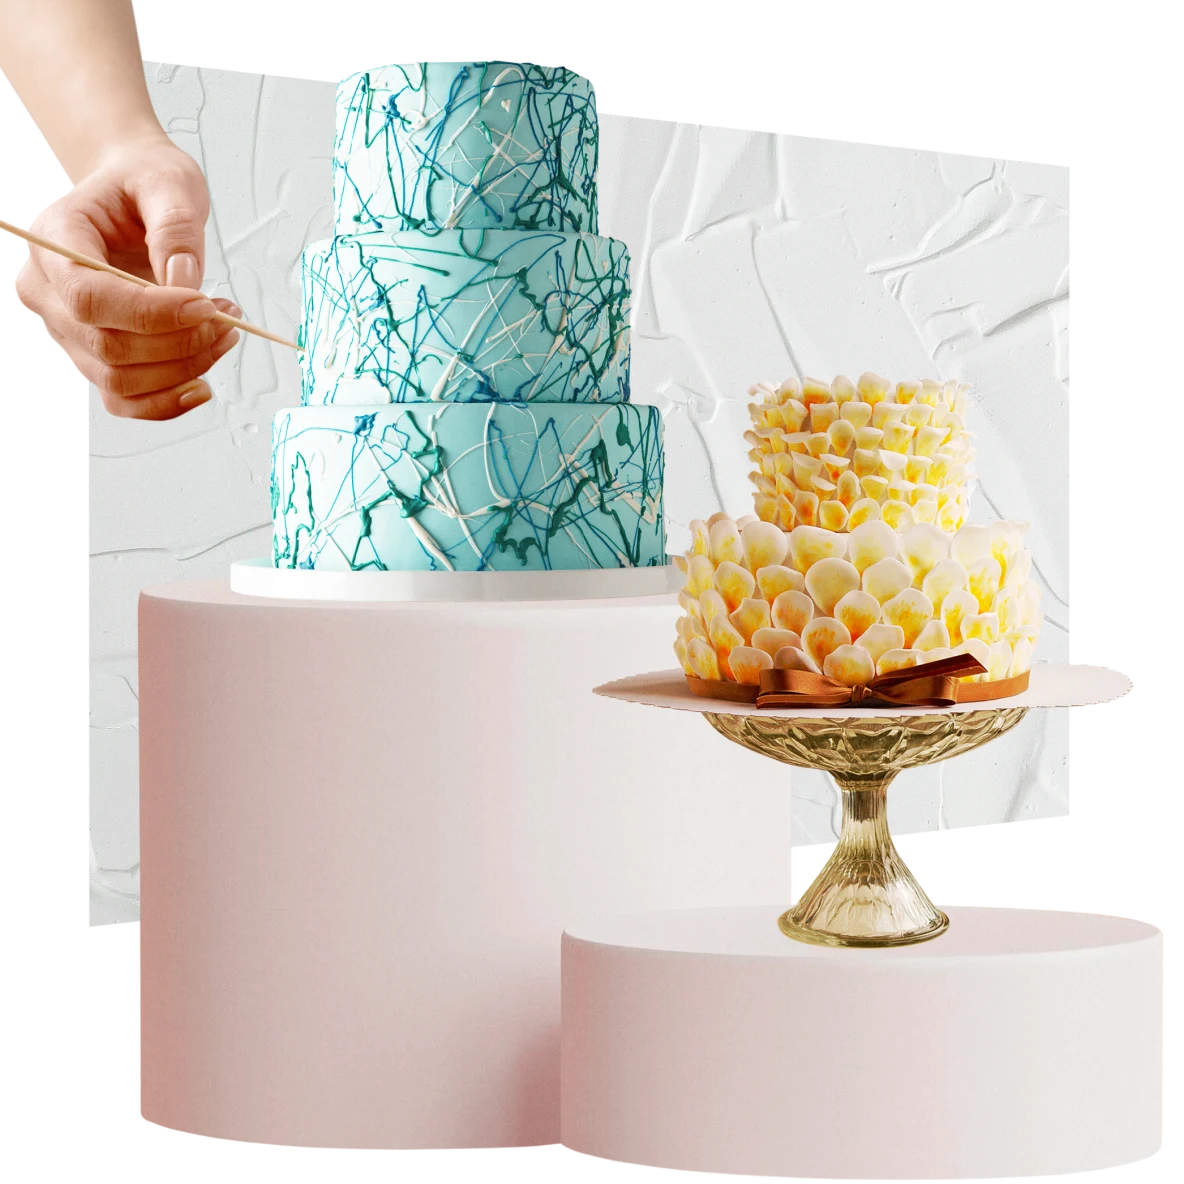 Bolo de três camadas verde-claro à esquerda, bolo menor de duas camadas amarelo e branco à direita. À esquerda, mão decorando bolo. Glacê branco no plano de fundo.